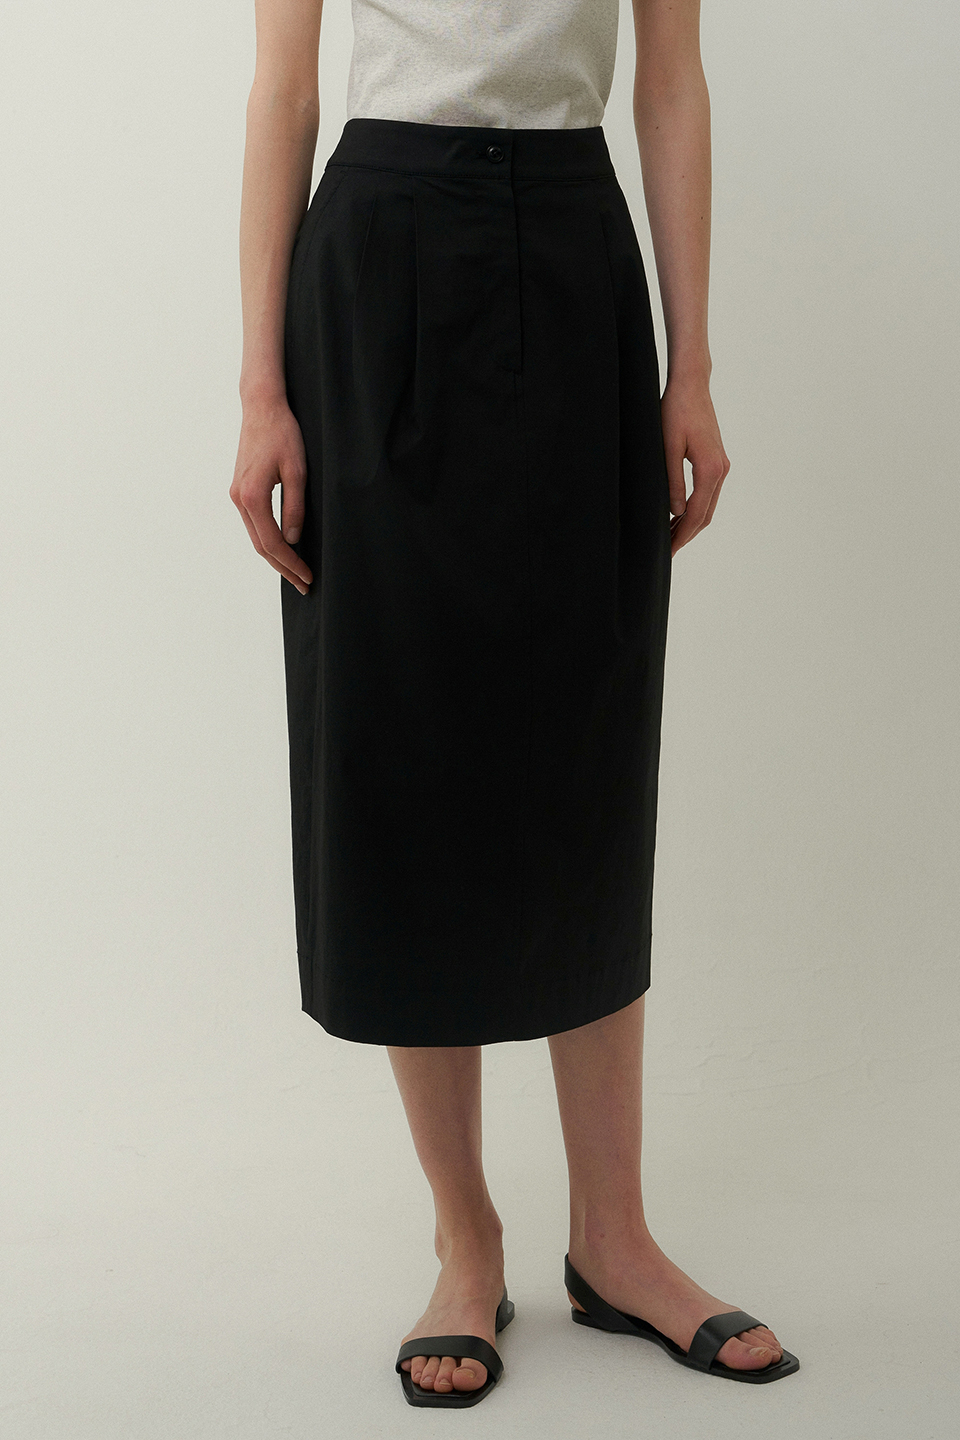 cotton tuck skirt (black)